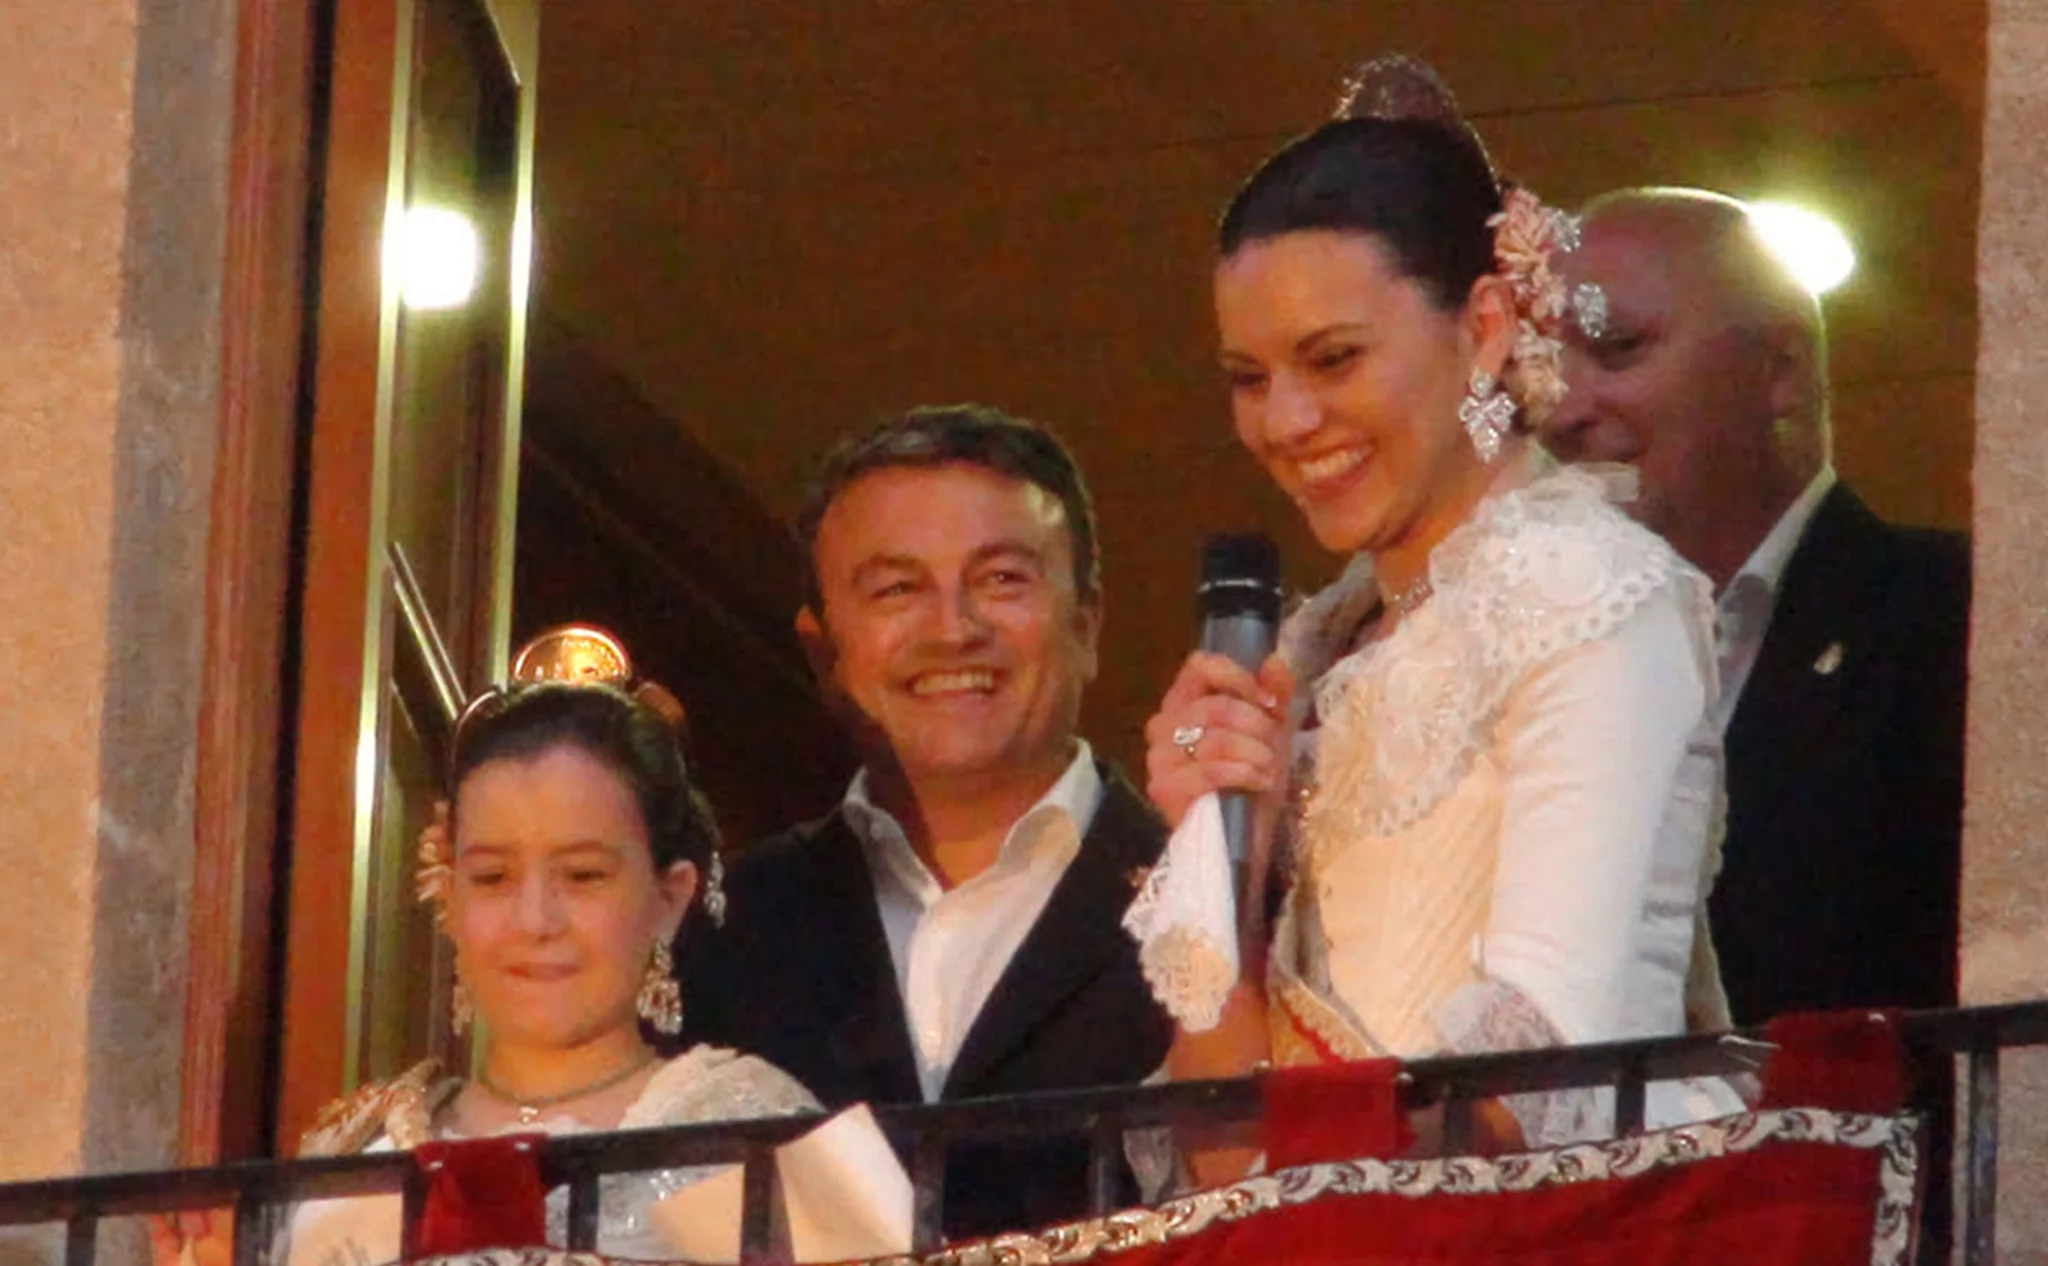 Olivia Clemente, José Chulvi, Ángela Devesa y Juan Ortolá en el balcón del Ayuntamiento de Jávea durante el pregón